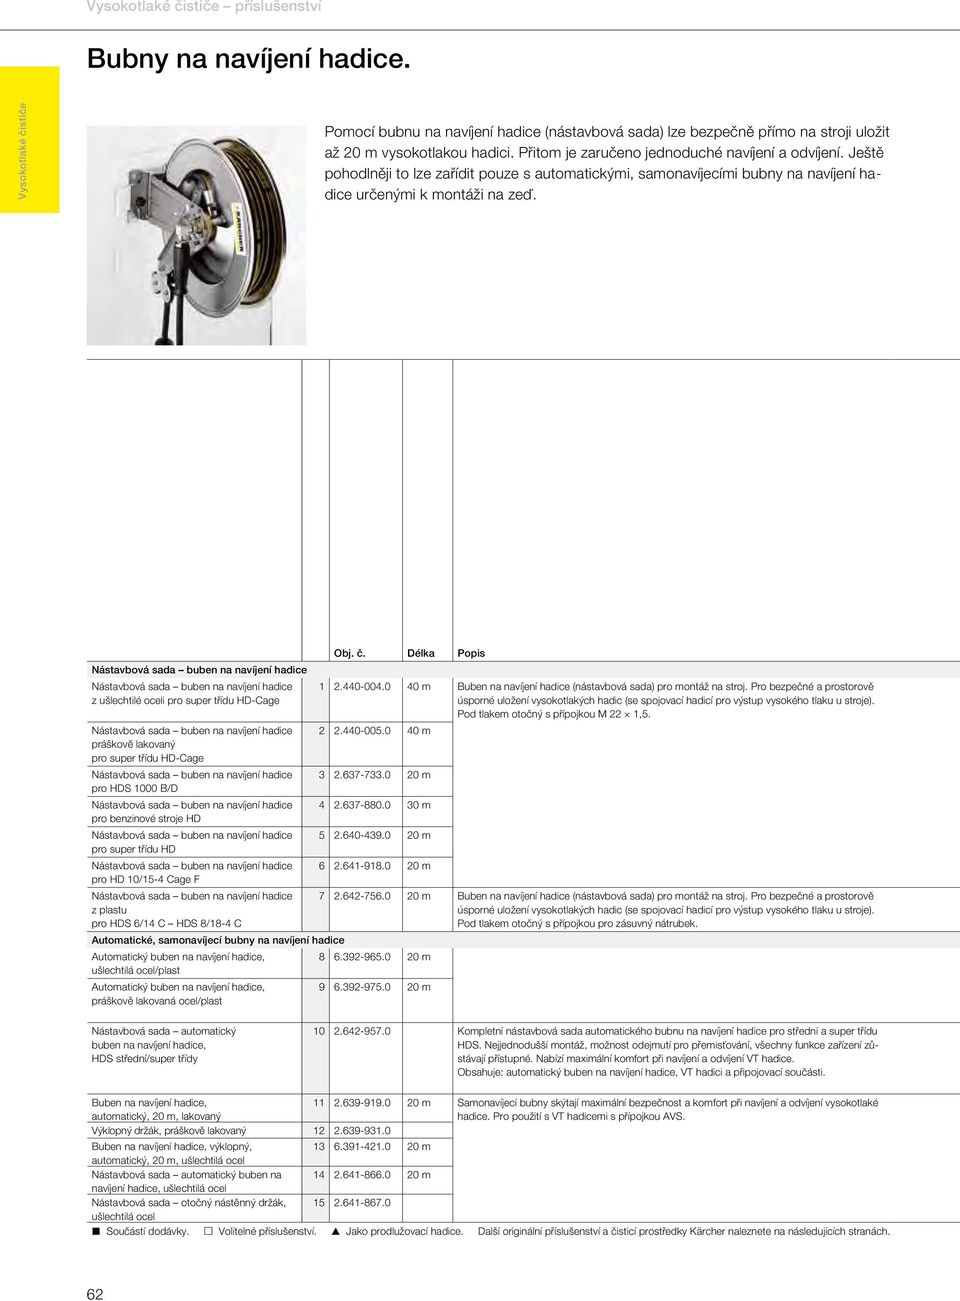 Délka Popis Buben na navíjení hadice (nástavbová sada) pro montáž na stroj. Pro bezpečné a prostorově úsporné uložení vysokotlakých hadic (se spojovací hadicí pro výstup vysokého tlaku u stroje).